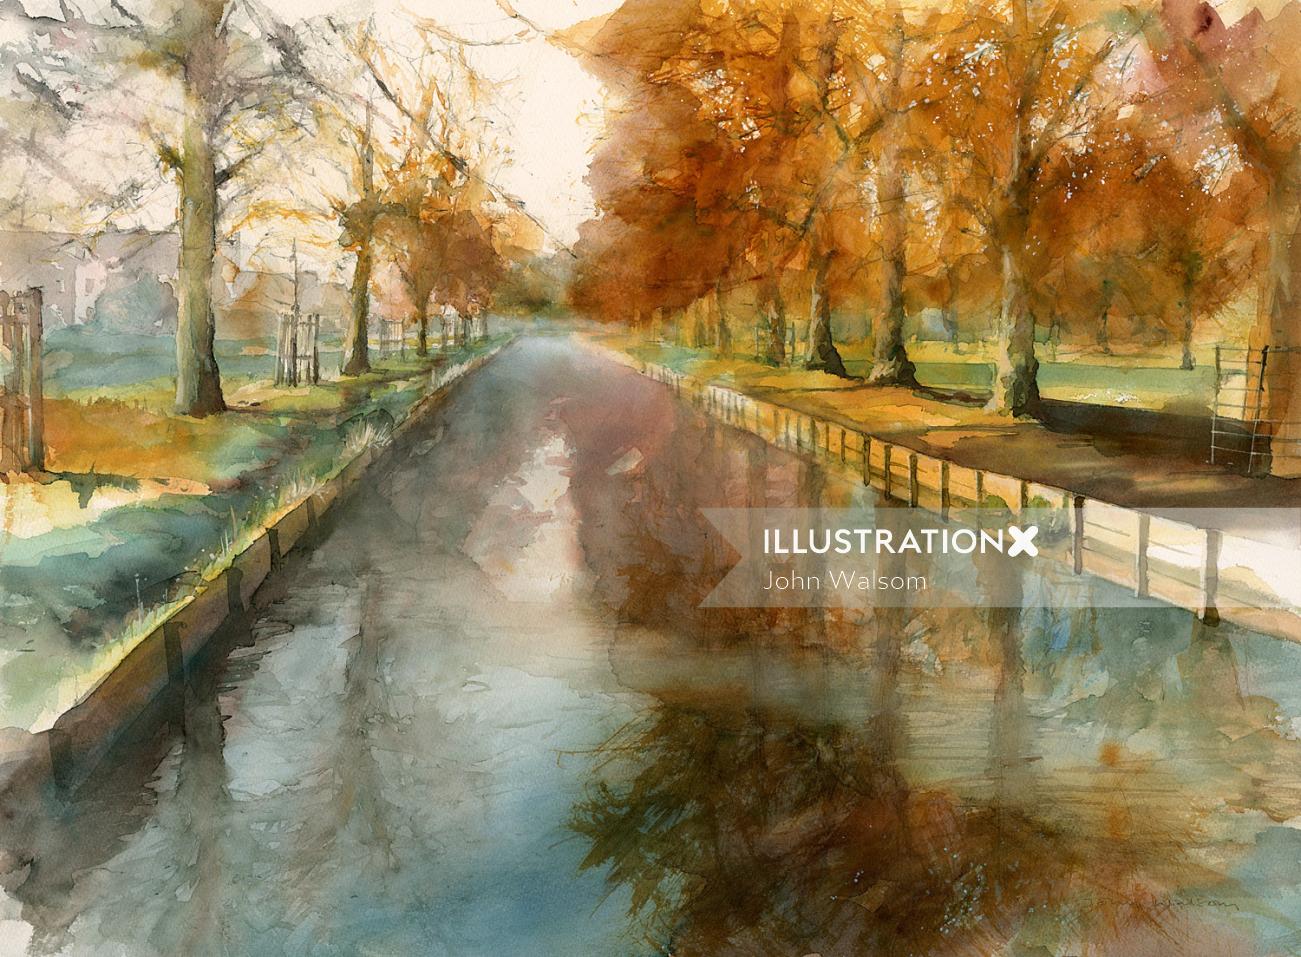 描绘布希公园搬运工溪流的秋天景象